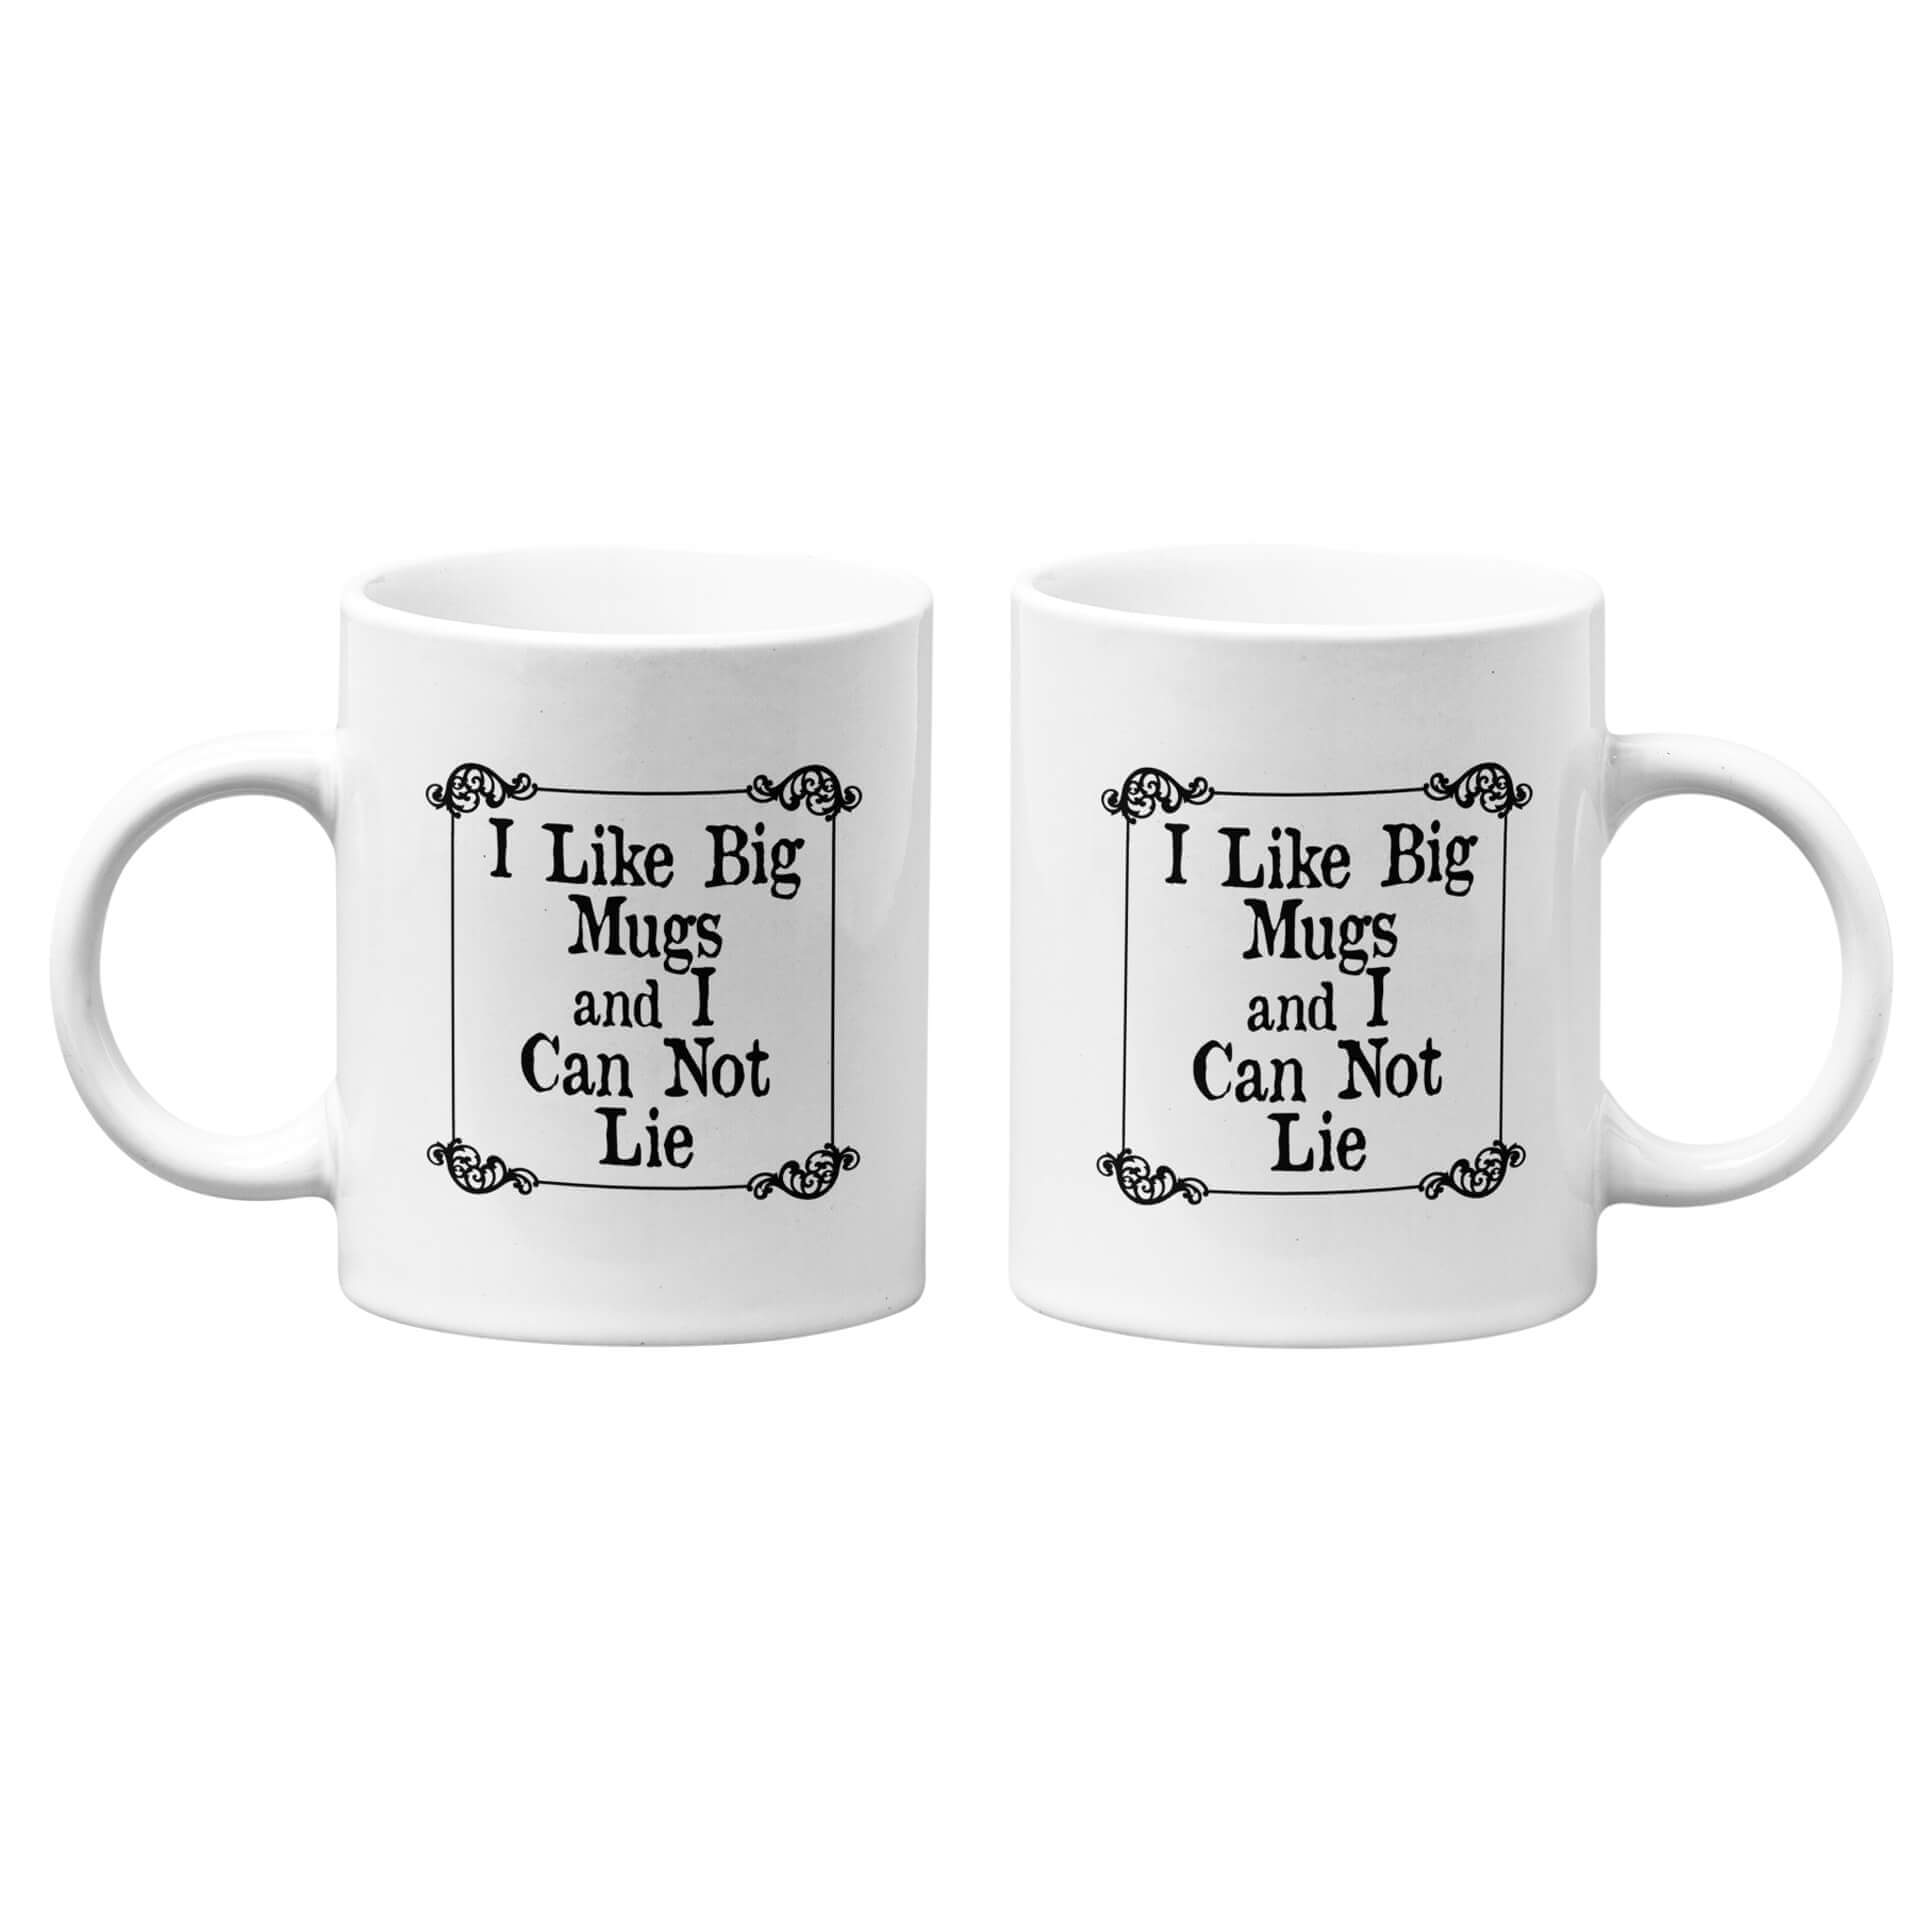 I Like Big Mugs and I Can Not Lie Mug